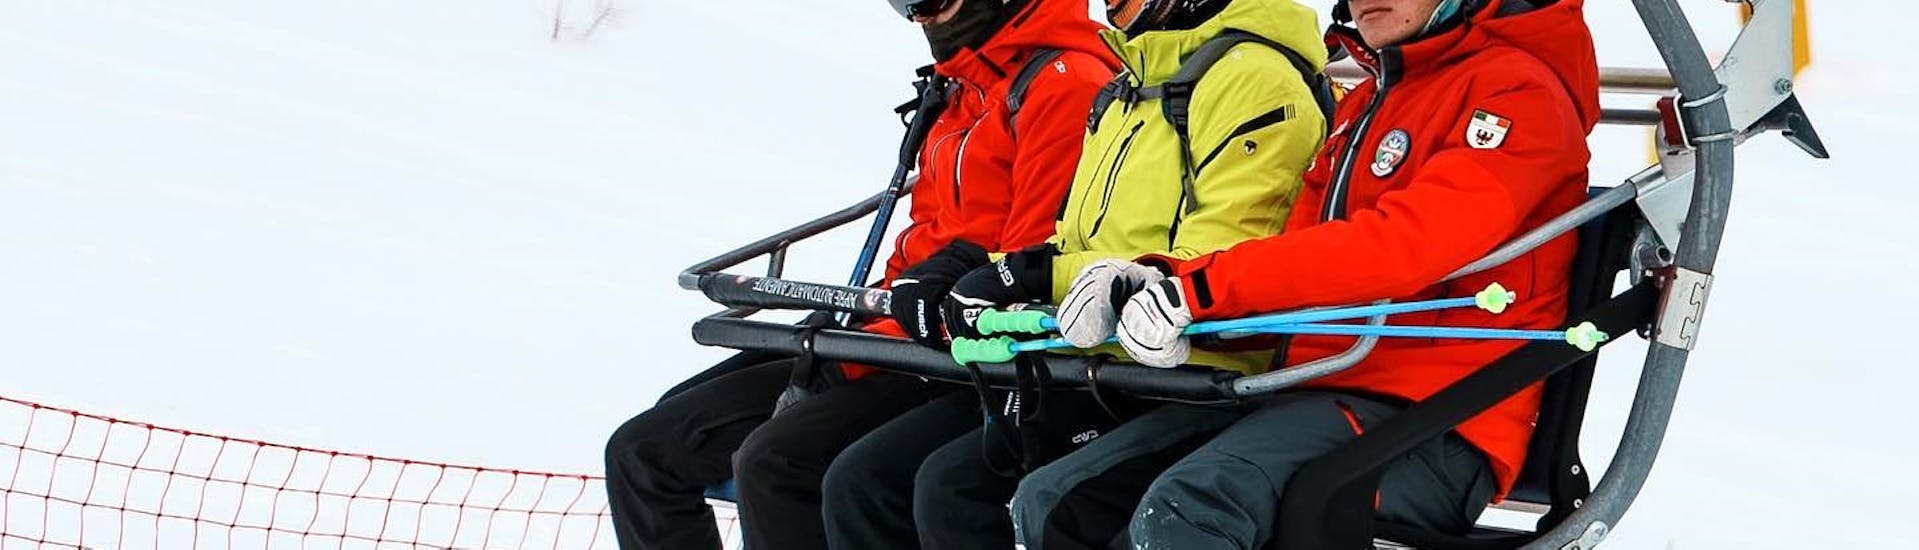 Lezioni di sci per ragazzi (14-18 anni) per tutti i livelli | Special.